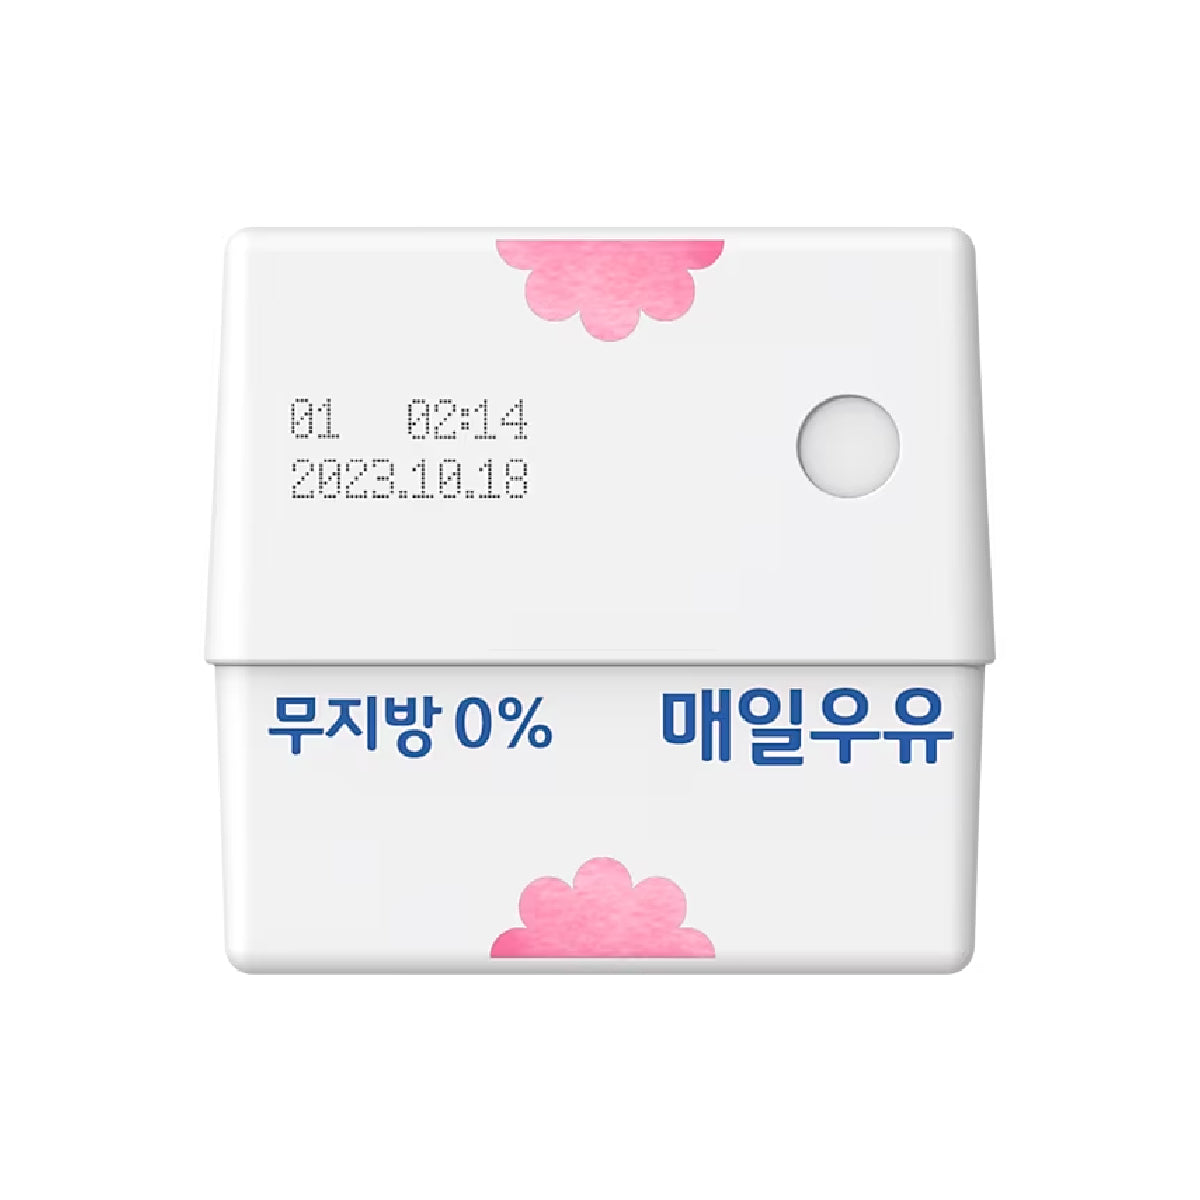 Samsung Official Maeil Milk Buds 2 Pro Case